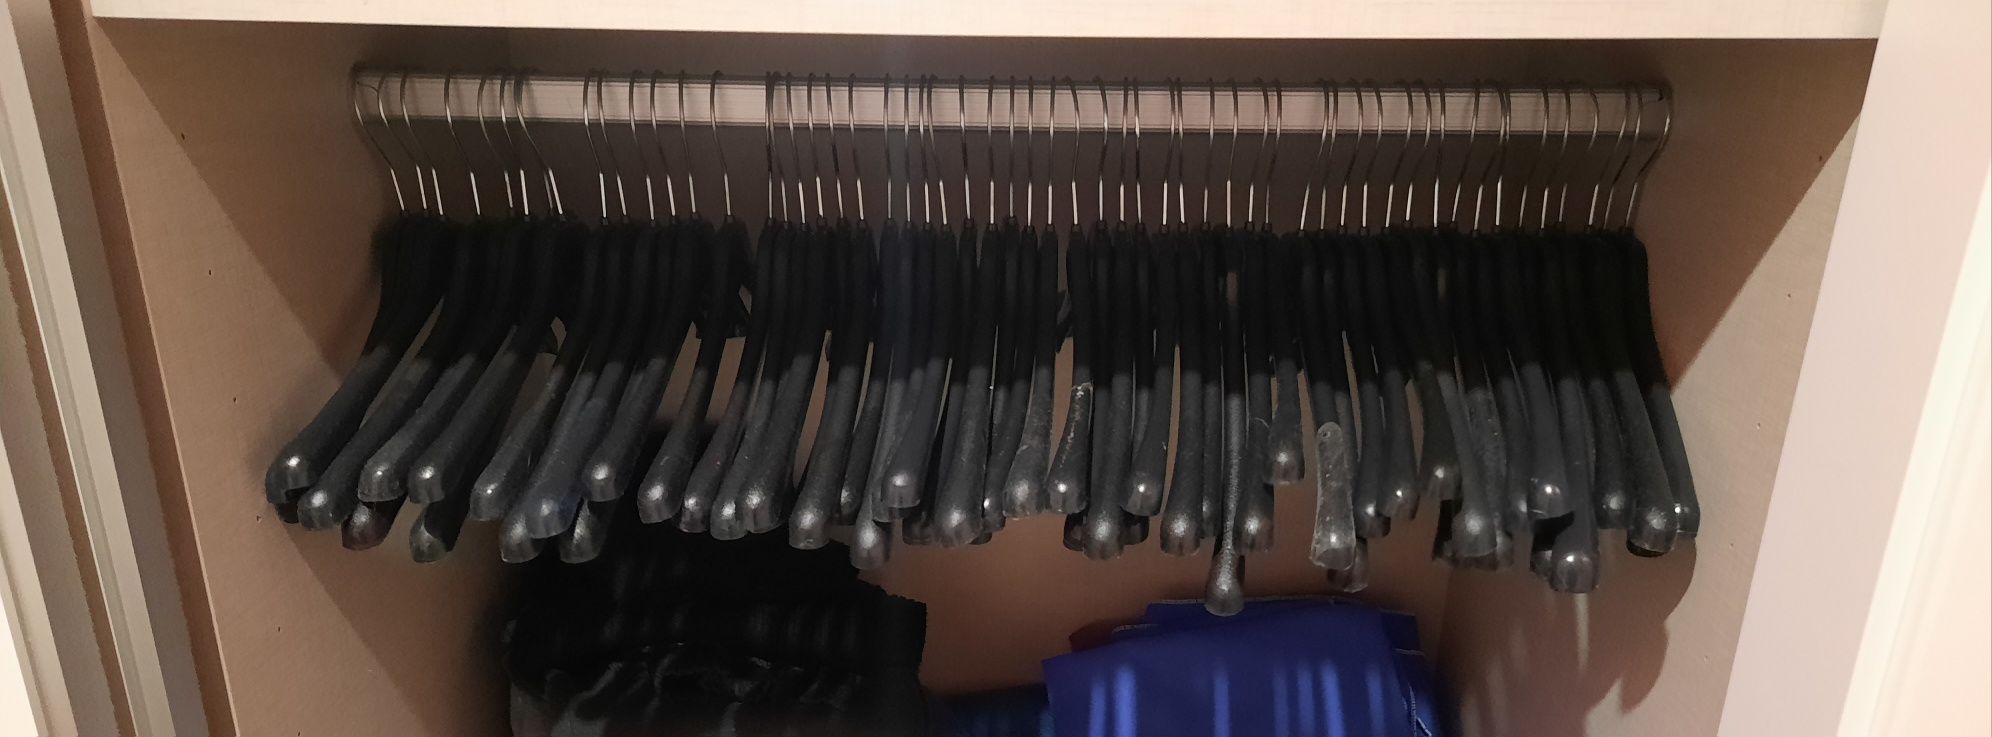 Cabides de roupas 96 (78 pretos e 18 brancos)